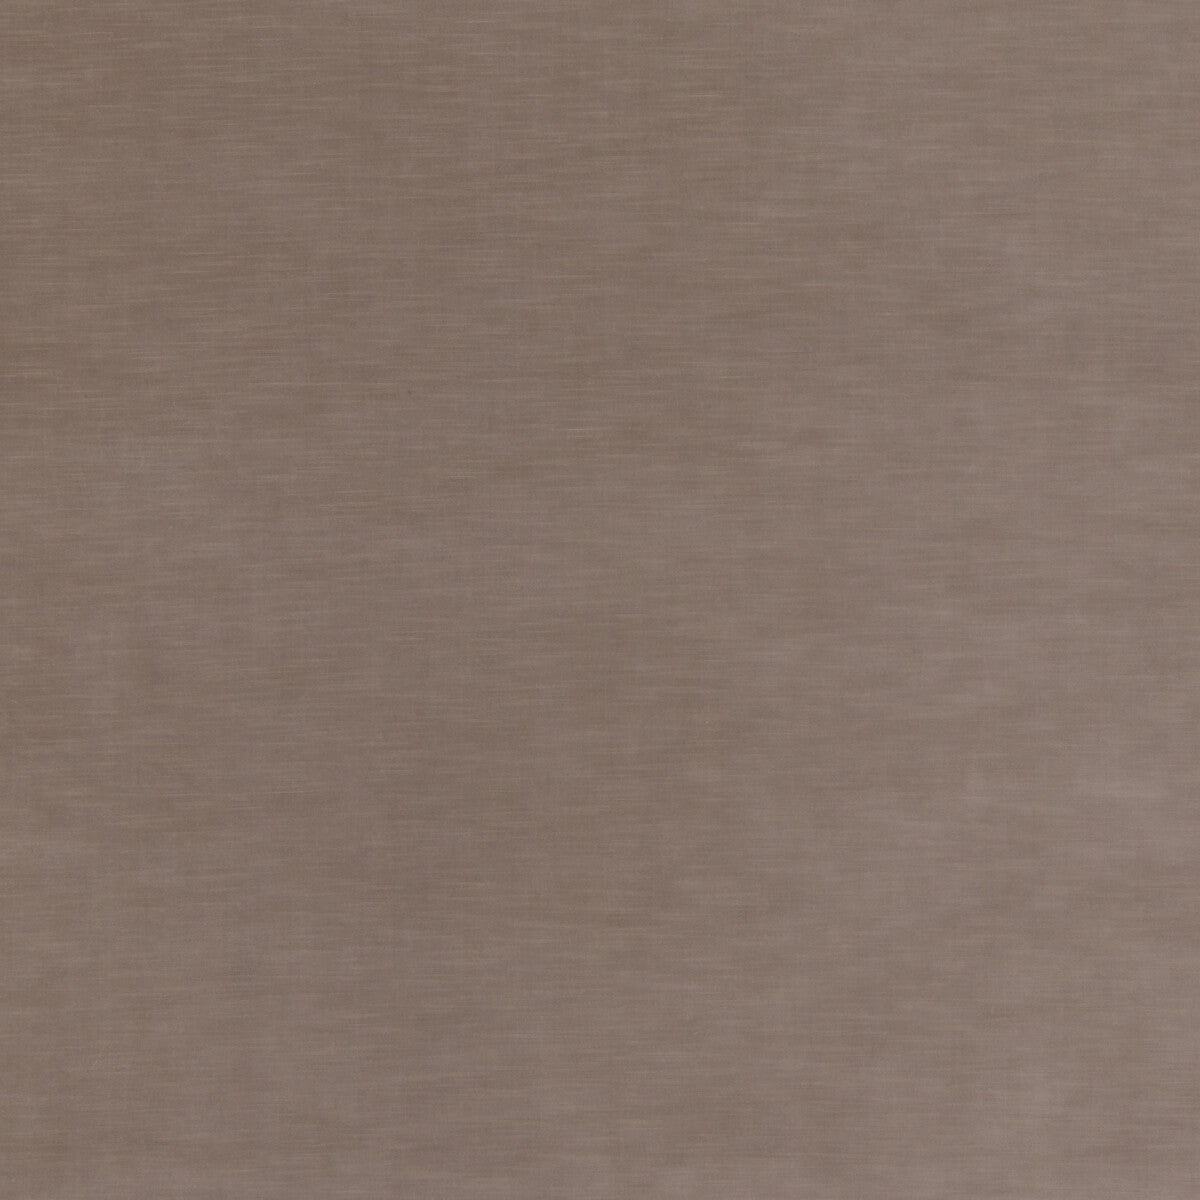 Quintessential Velvet fabric in mole color - pattern ED85359.240.0 - by Threads in the Quintessential Velvet collection